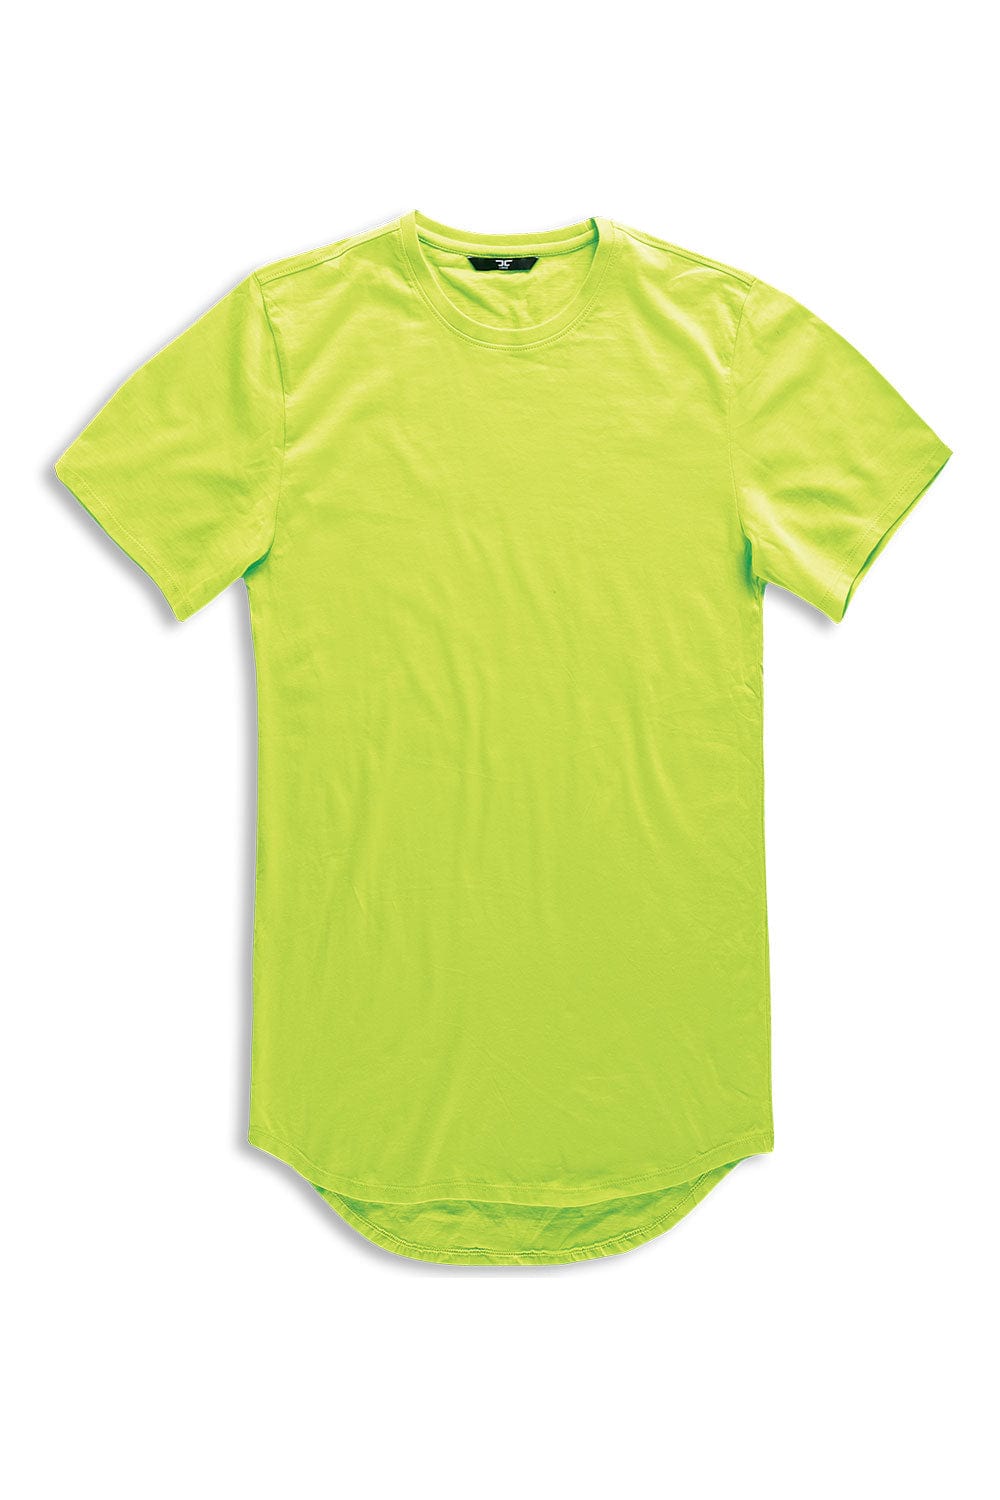 Jordan Craig Scallop T-Shirt (Athletic Fit) Volt / S